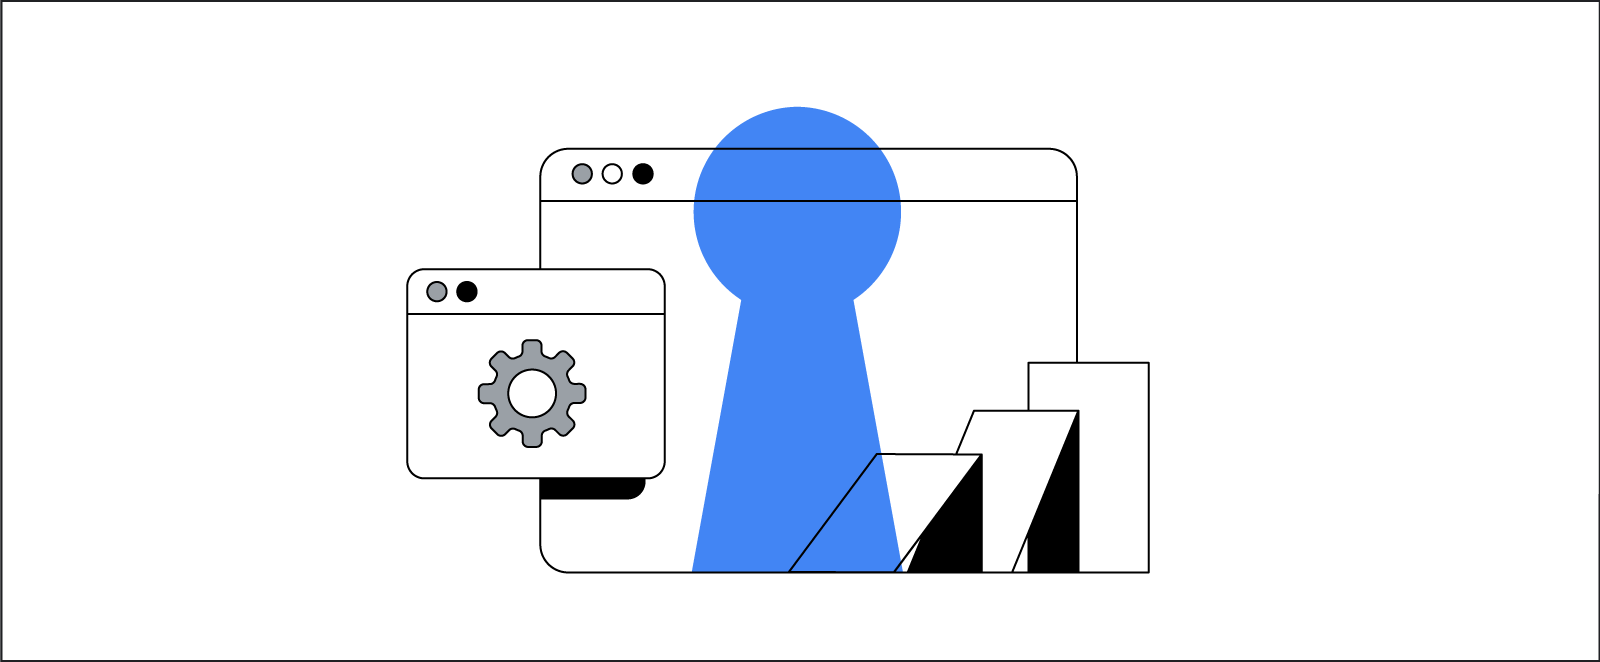 Un browser con un'icona a forma di ingranaggio per accedere alle impostazioni, una fila di carte inclinate che cadono e un buco della serratura di colore blu illustrano l'enfasi di Google su privacy, misurazione e automazione.